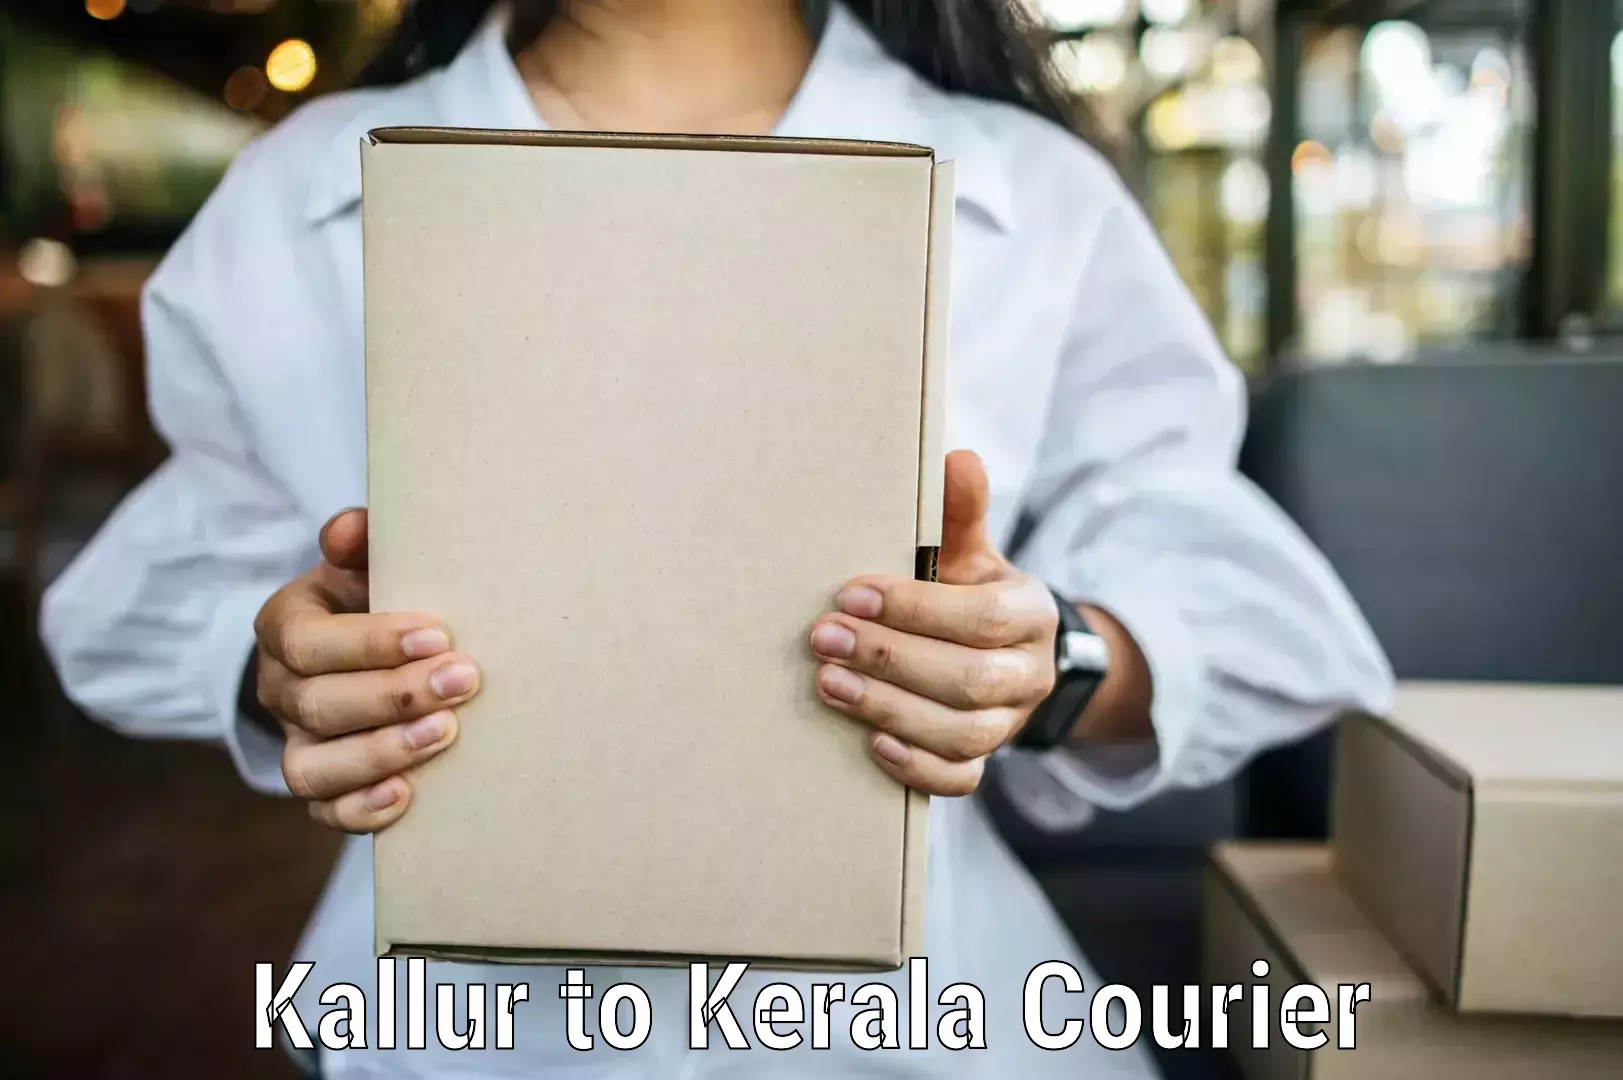 Urban courier service Kallur to Parippally